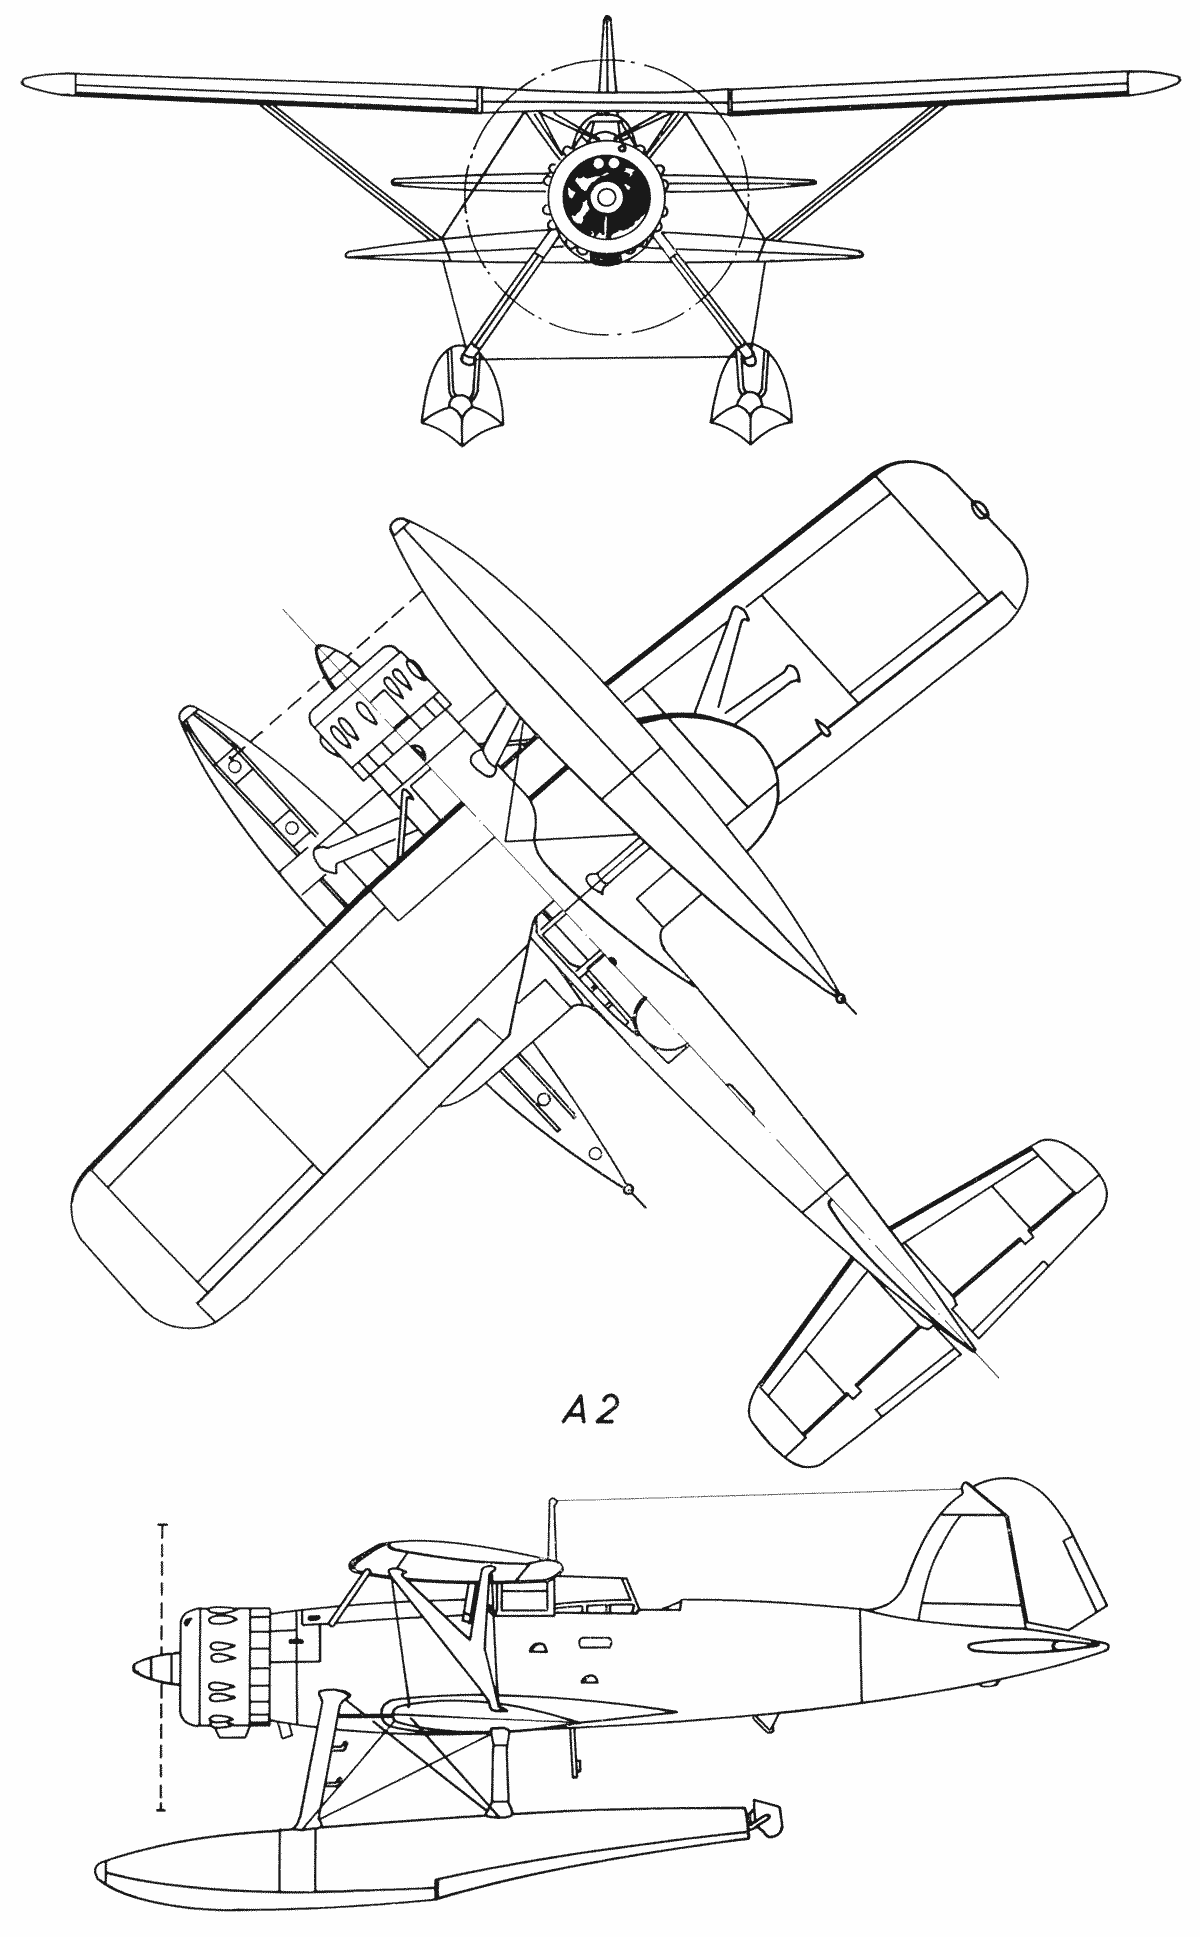 Heinkel He 114 blueprint